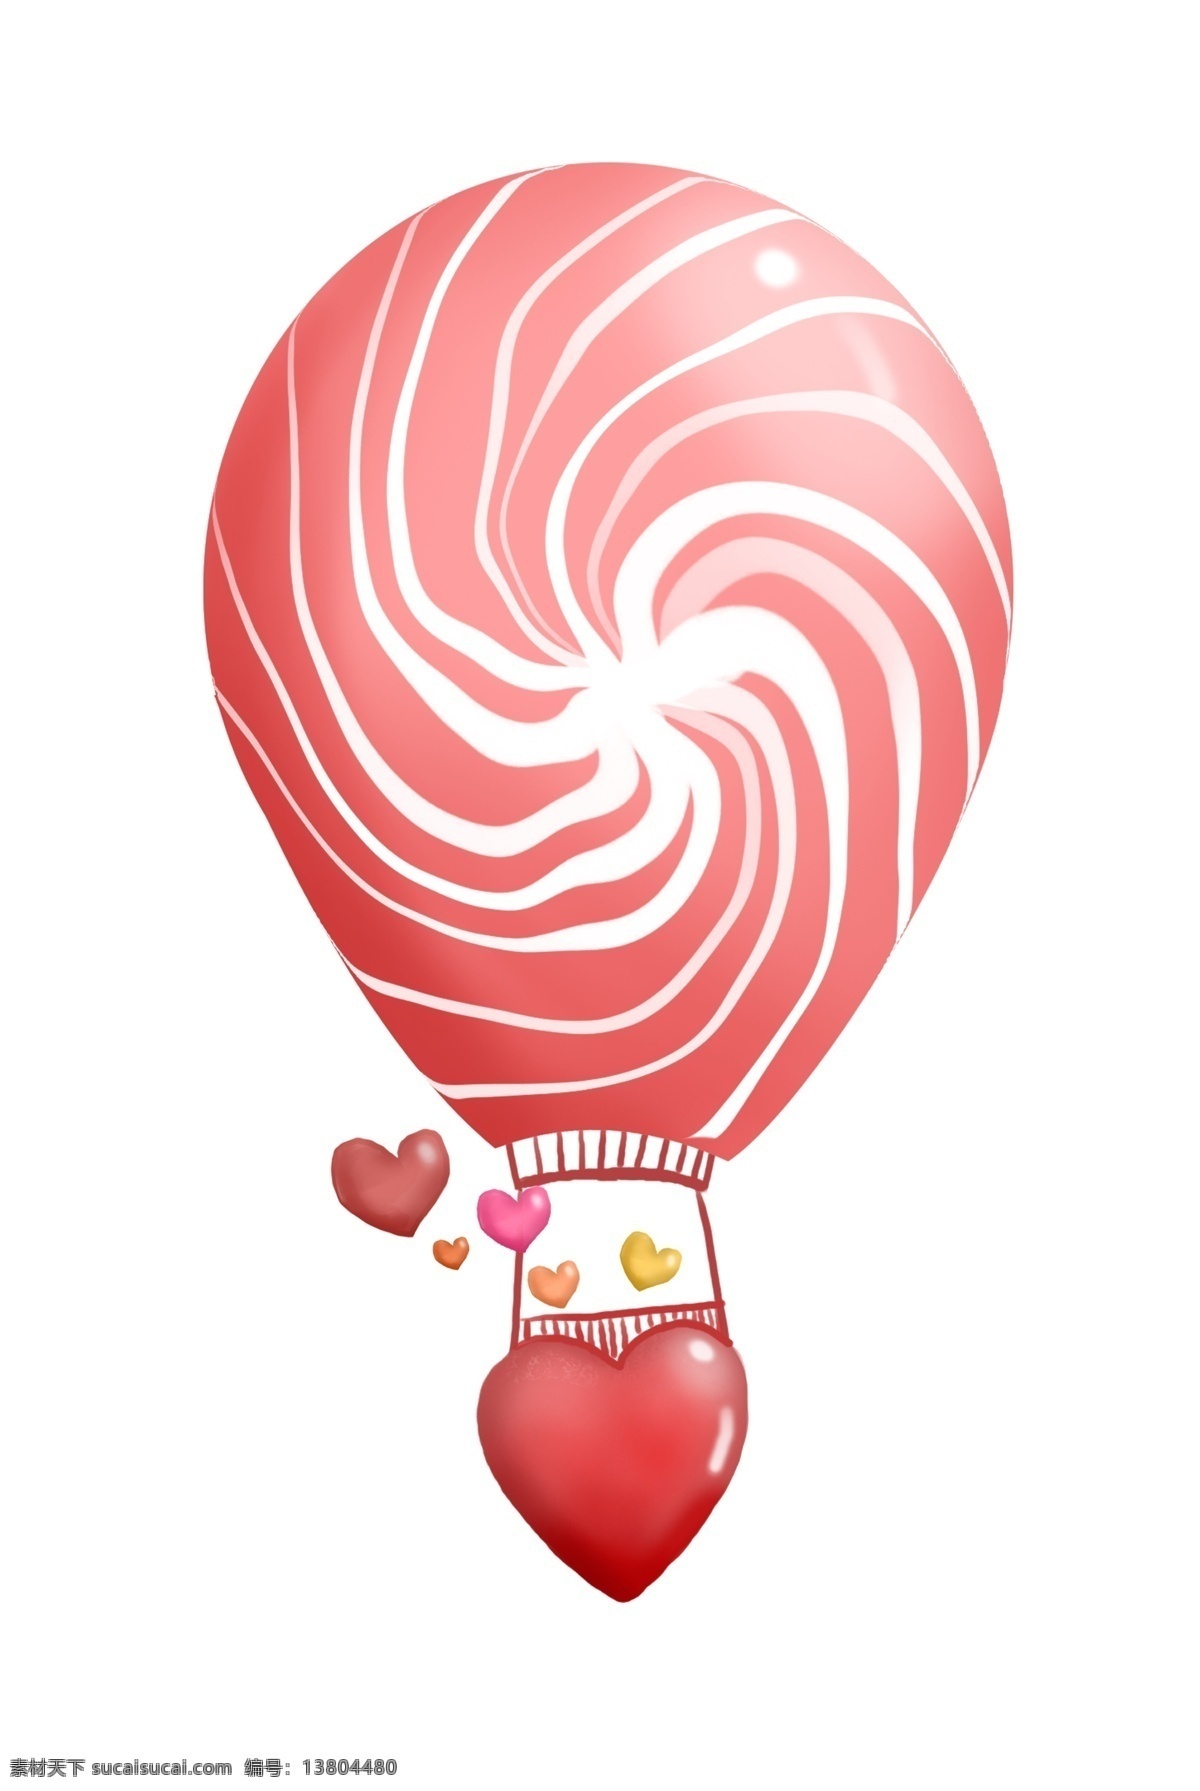 手绘 卡通 爱心 热气球 插画 手绘热气球 卡通热气球 情人节气球 大气球 红色爱心 红心 红色气球